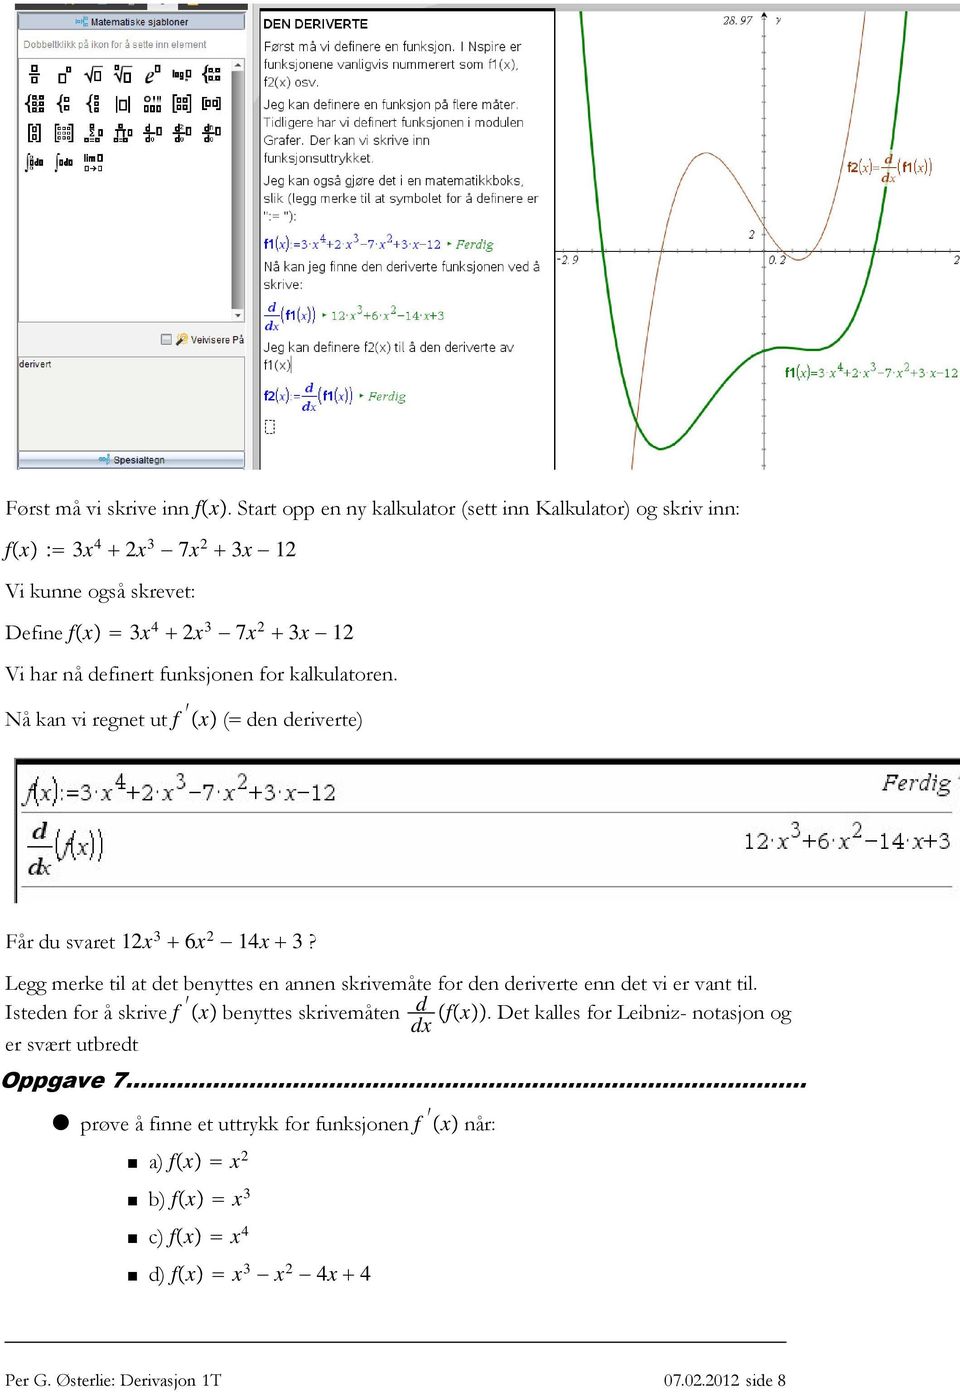 definert funksjonen for kalkulatoren. Nåkanviregnetut f x ( denderiverte) Fårdusvaret 12x 3 6x 2 14x 3?